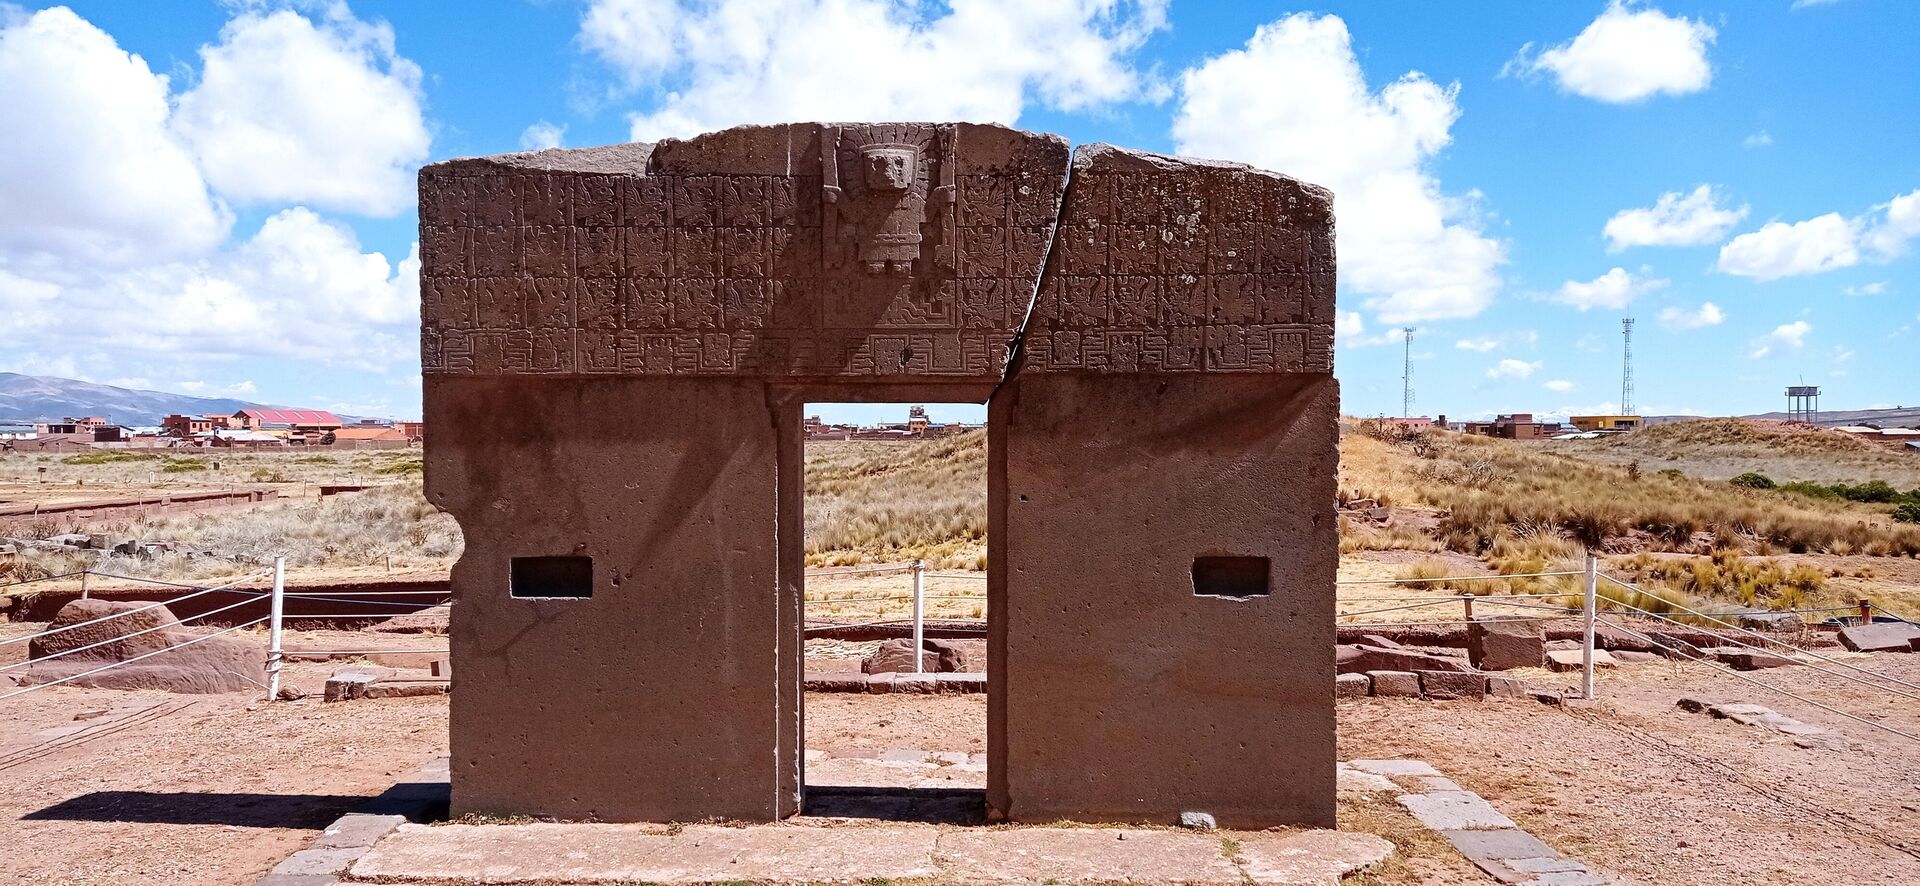 El centro arqueológico Tiwanaku, que recuerda la cultura tiwanakota, reabre sus tras la pandemia de COVID-19 - Sputnik Mundo, 1920, 09.08.2021